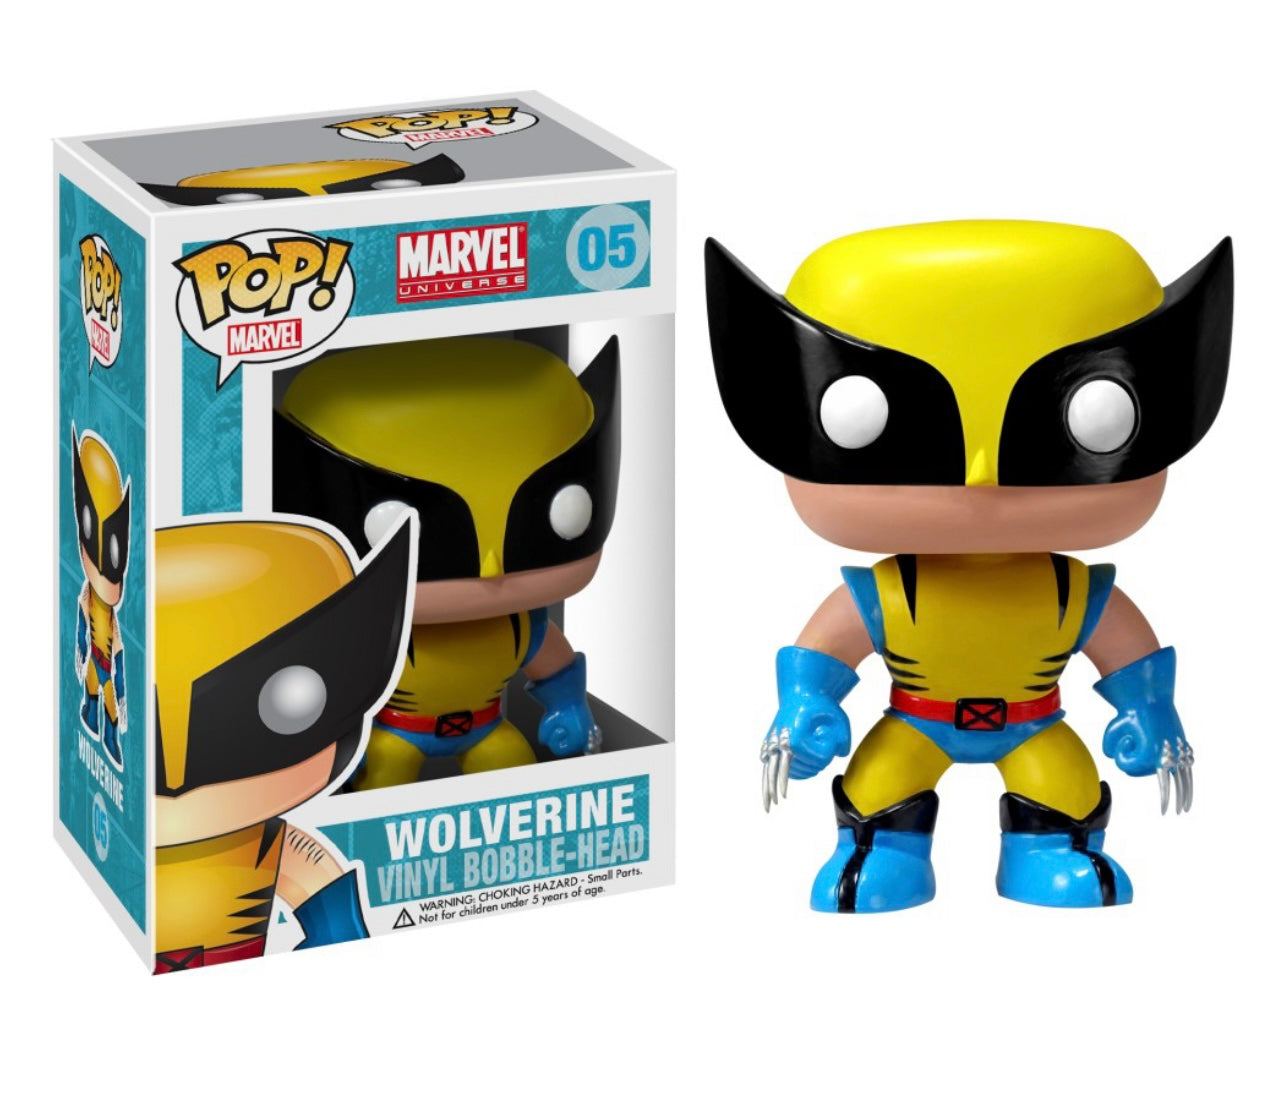 POP! Marvel X-Men Wolverine #05